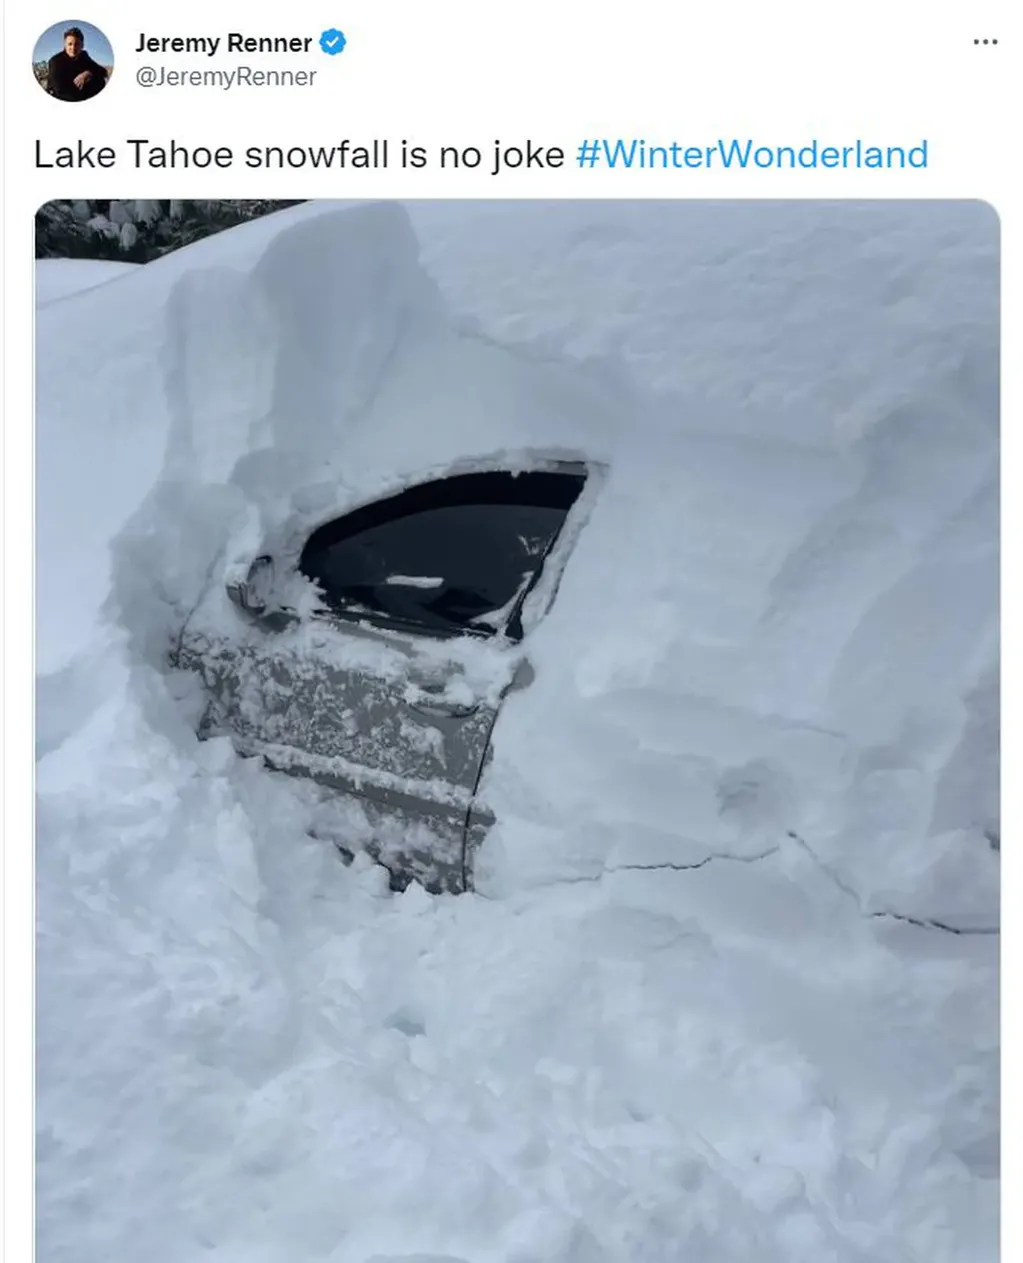 Jeremy Renner publicó un tuit días antes del accidente en el que anticipó el peligro de la nieve. Foto: Twitter / JeremyRenner